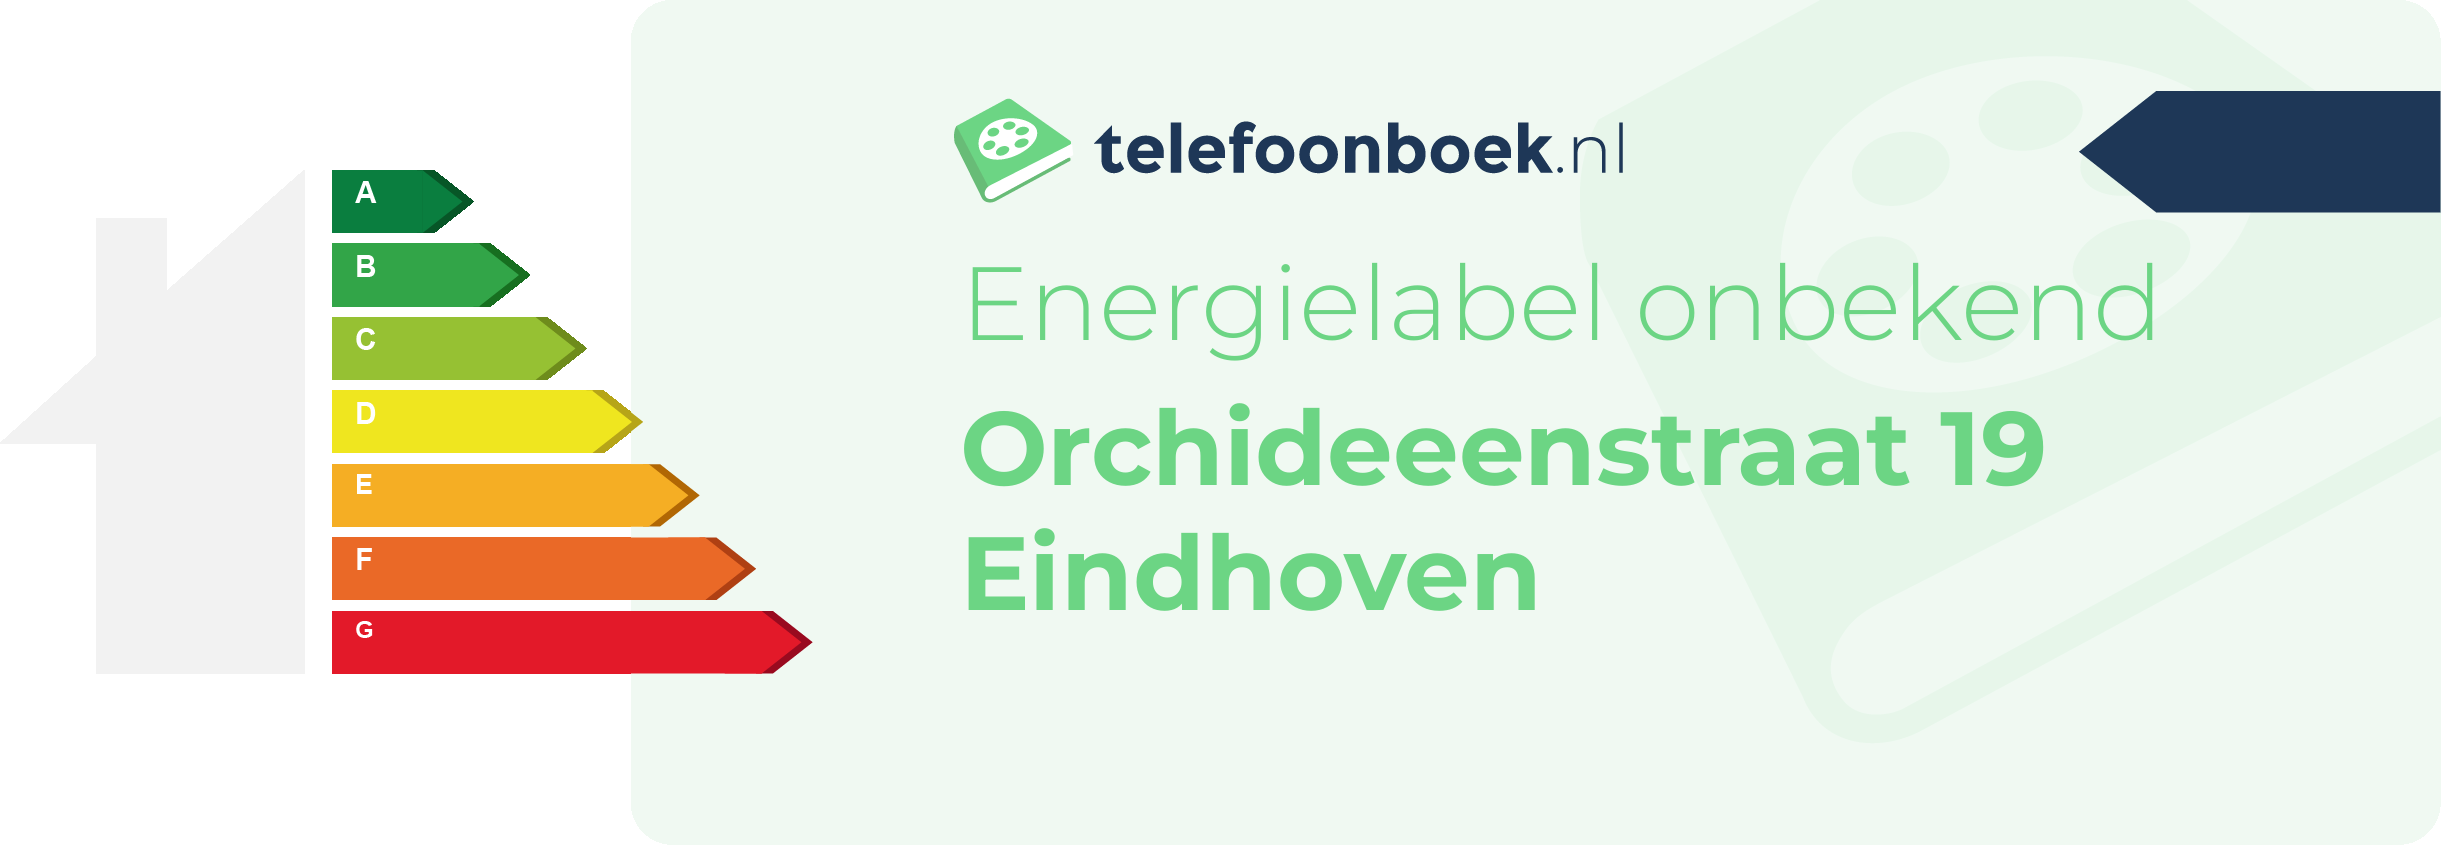 Energielabel Orchideeenstraat 19 Eindhoven